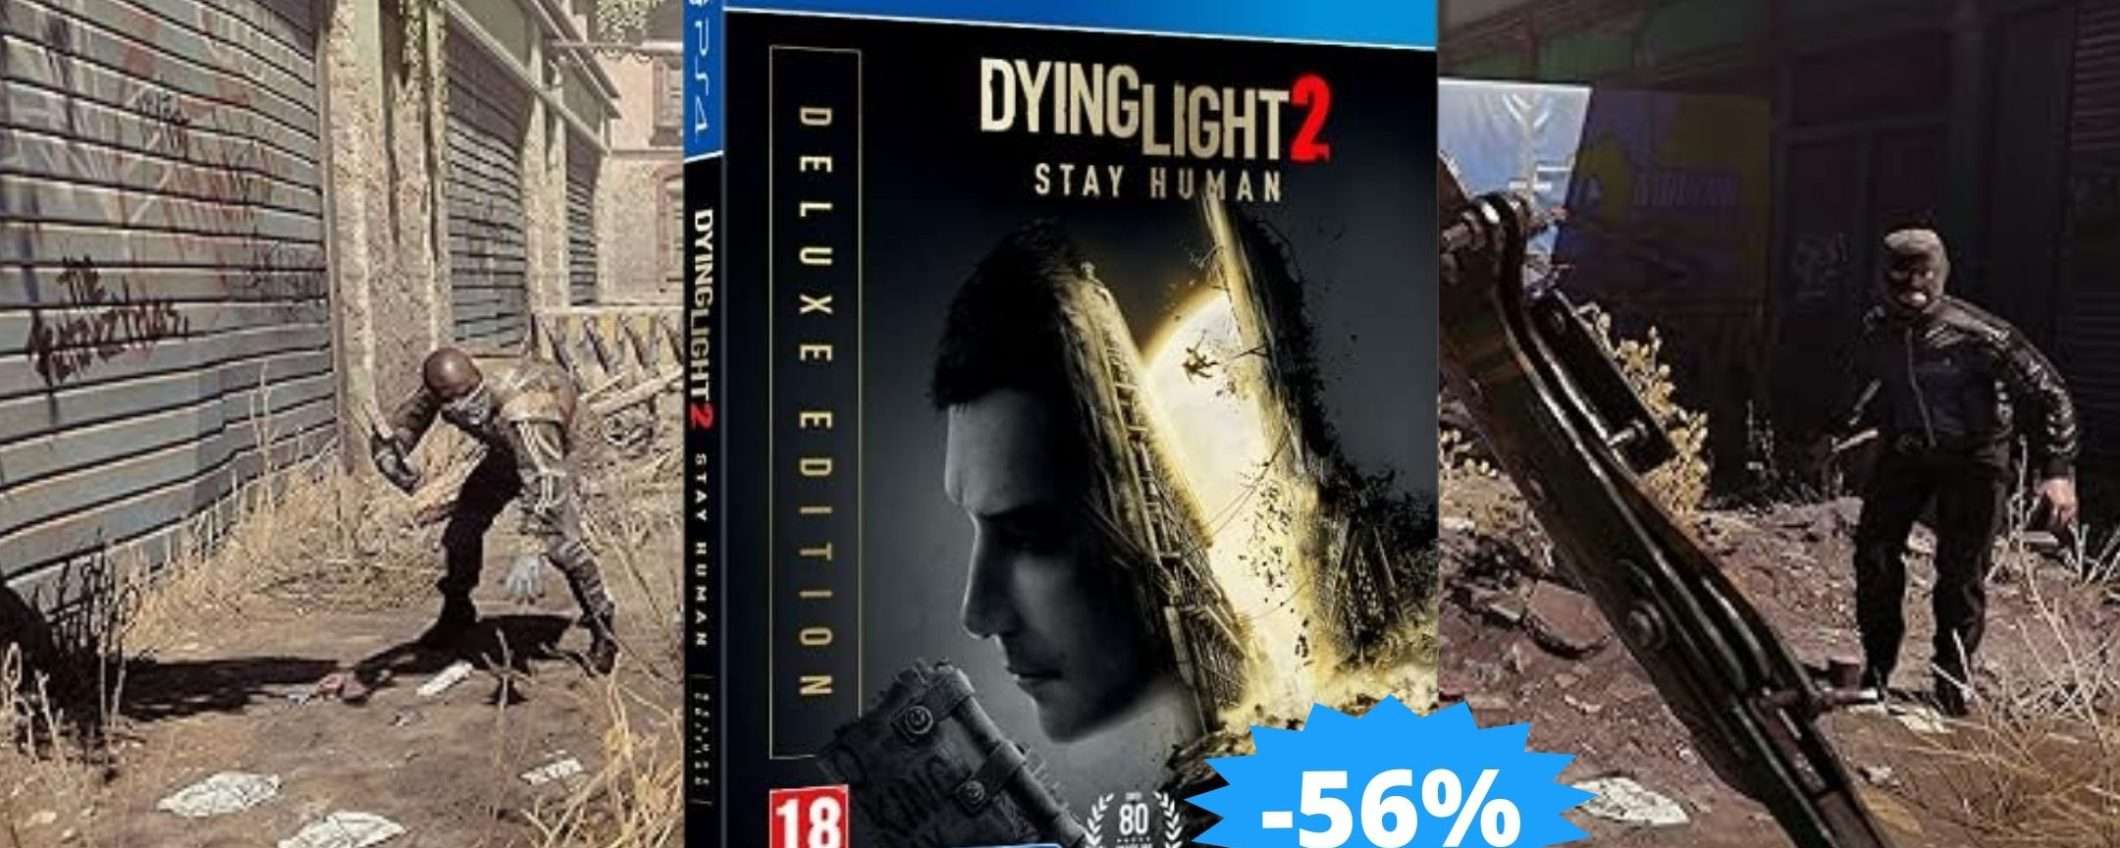 Dying Light 2 Stay Human: CROLLO del prezzo per la Deluxe Edition